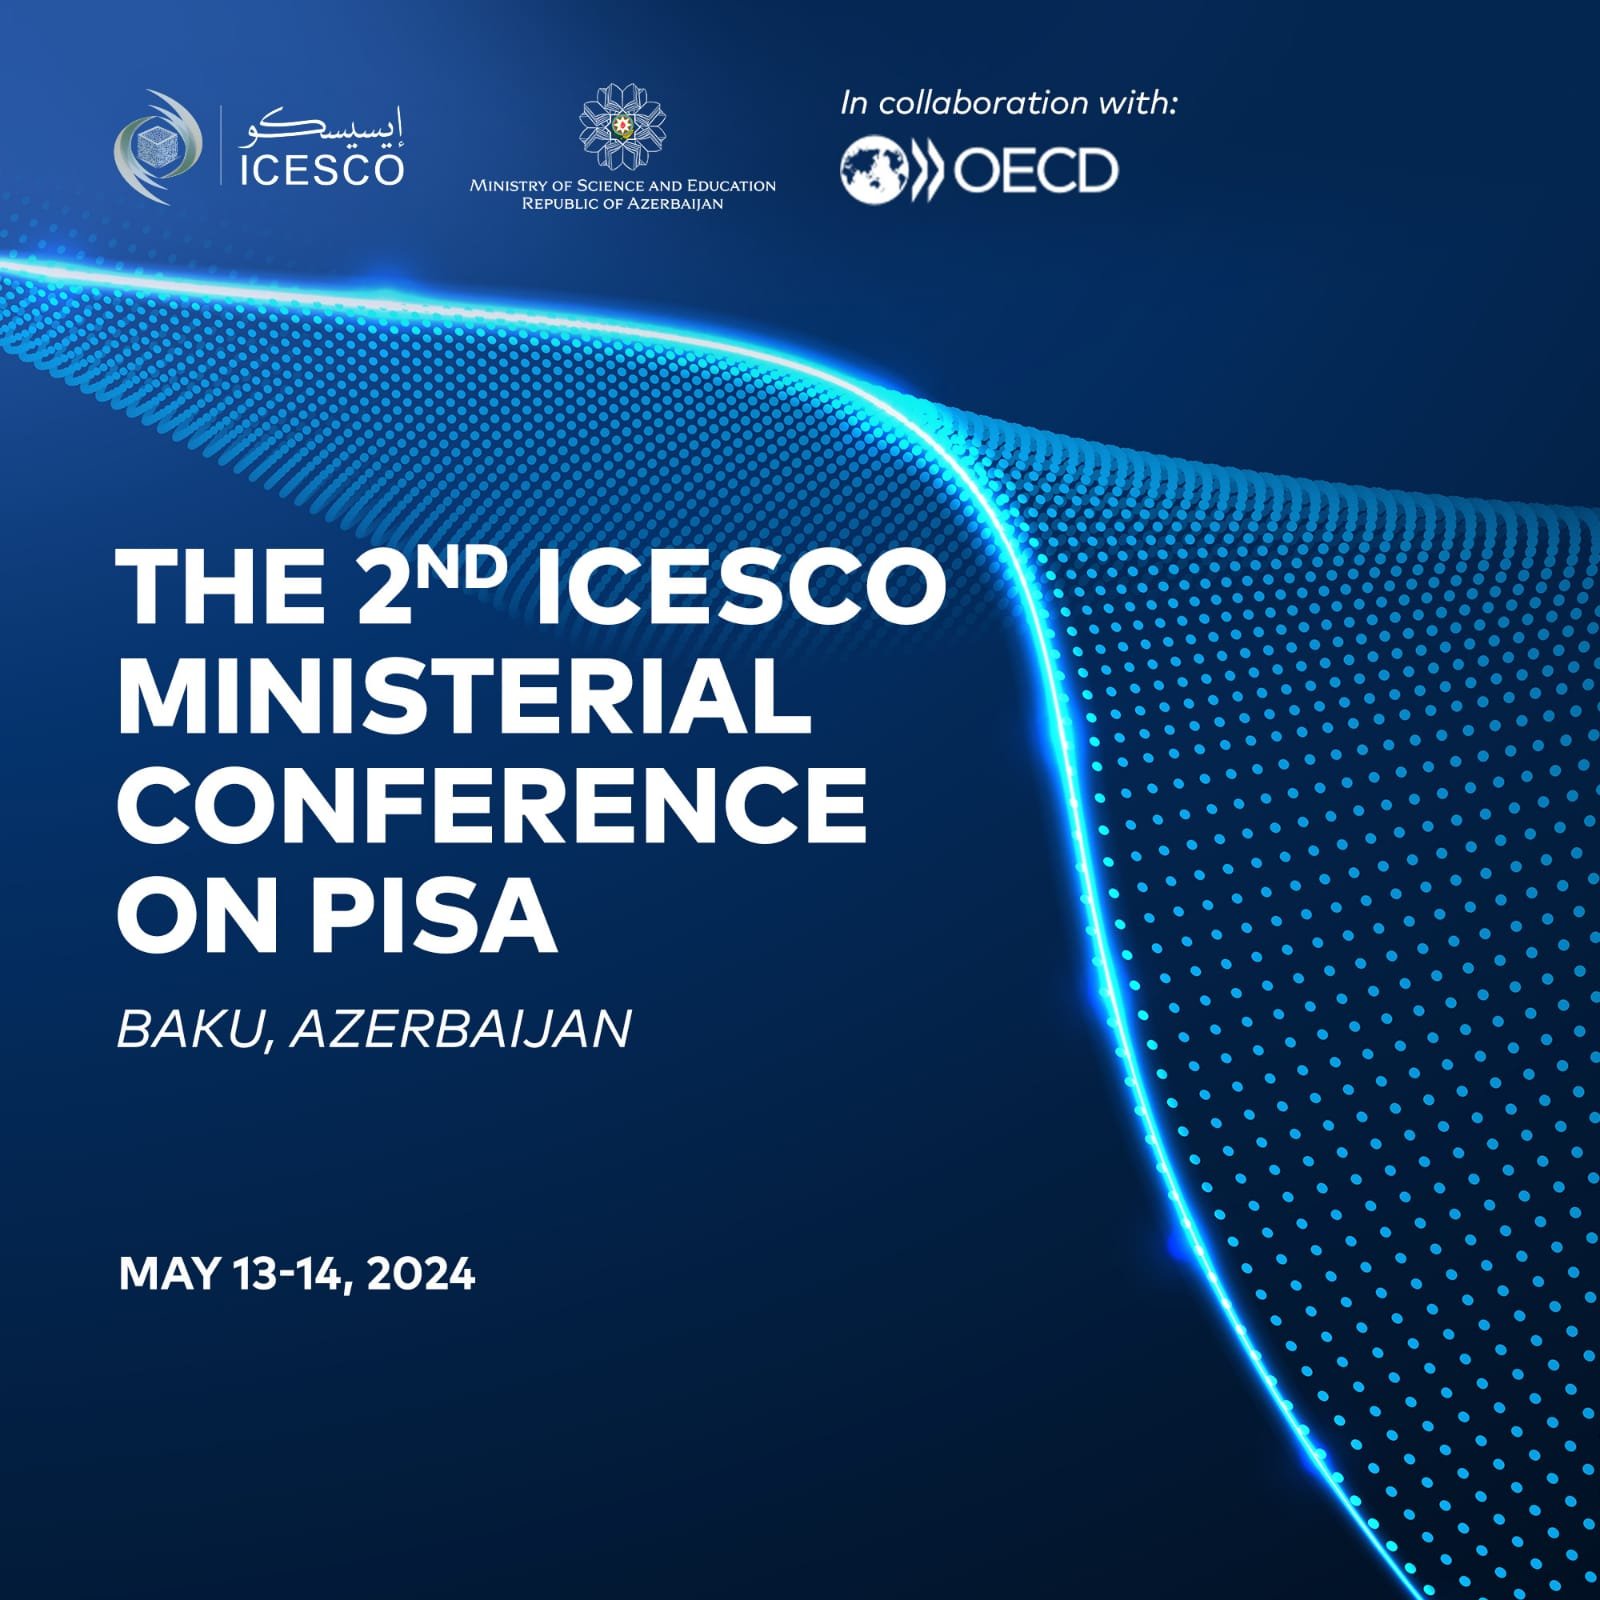 Bakıda PISA üzrə II ISESCO Nazirlər Konfransı keçiriləcək